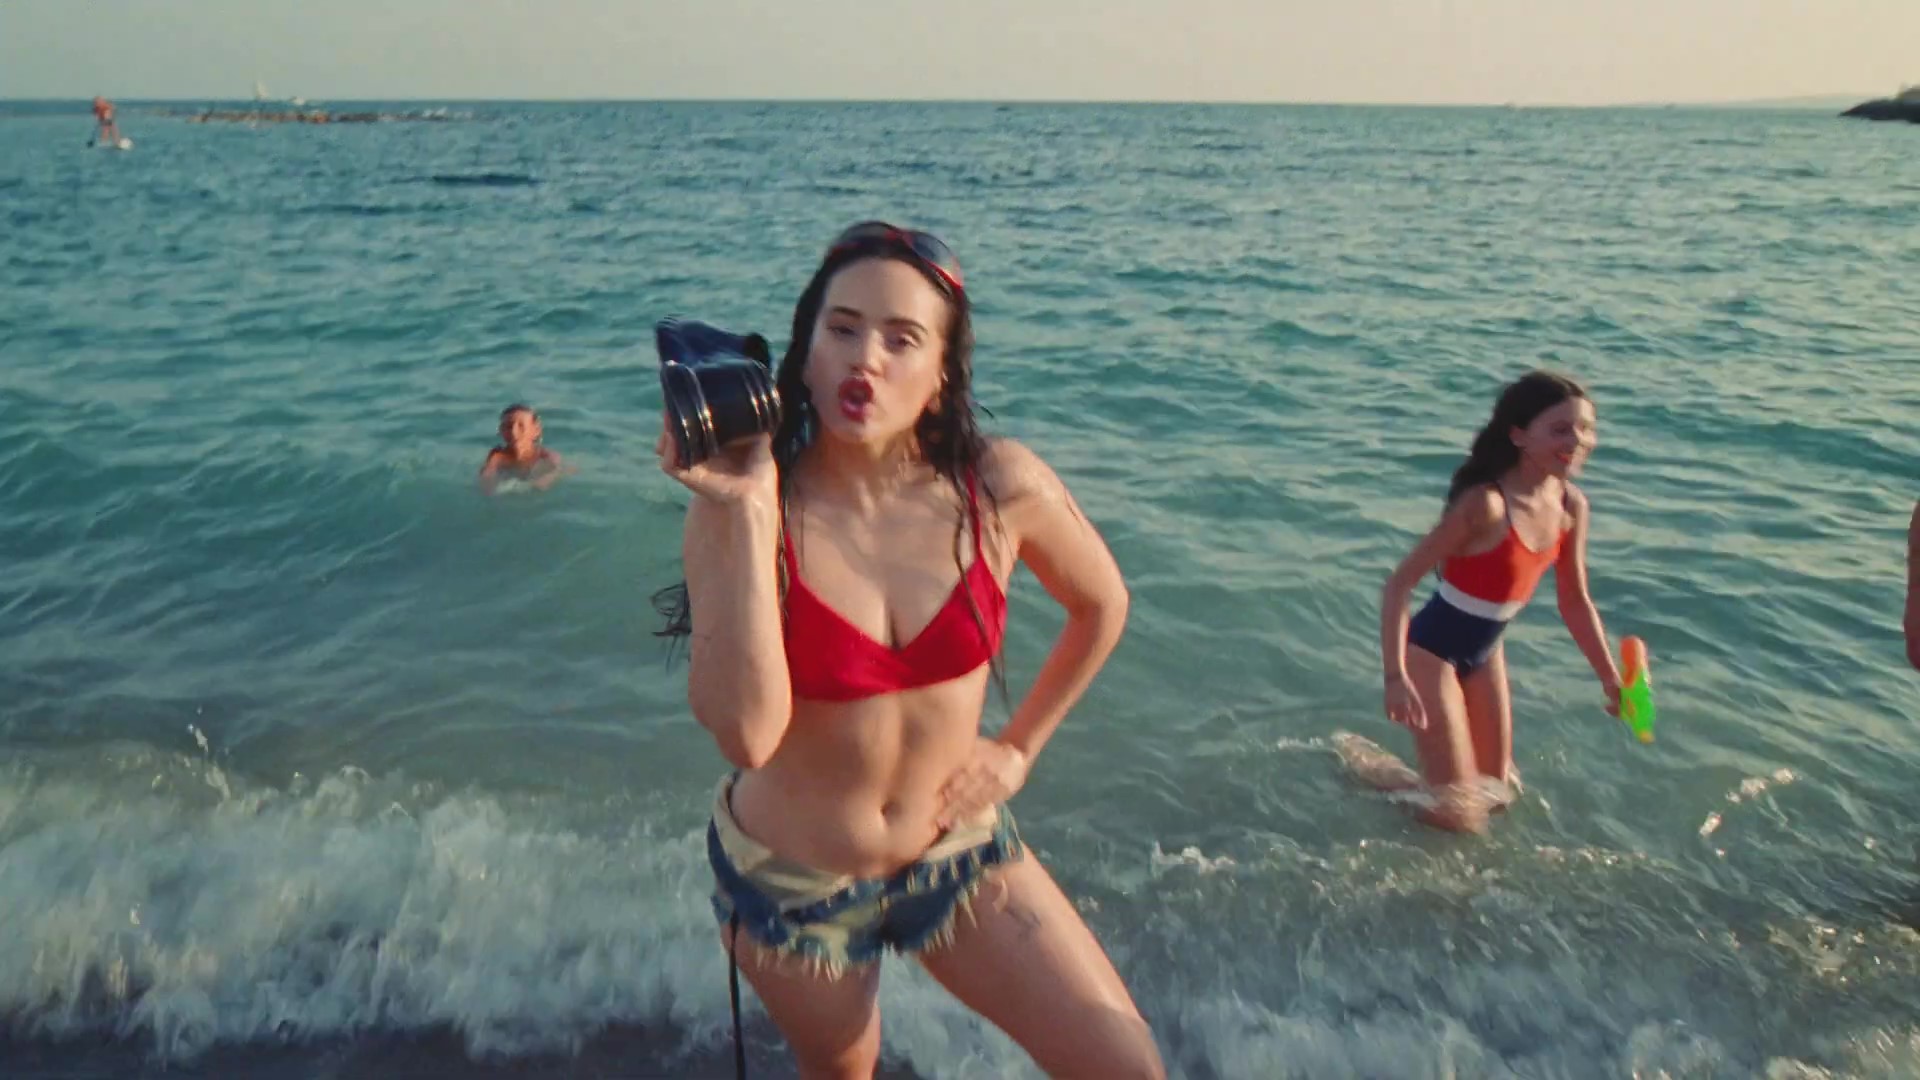 Rosalía lanzó un adelanto del video oficial de “Despechá”, la canción del verano en Europa que se estrenará hoy